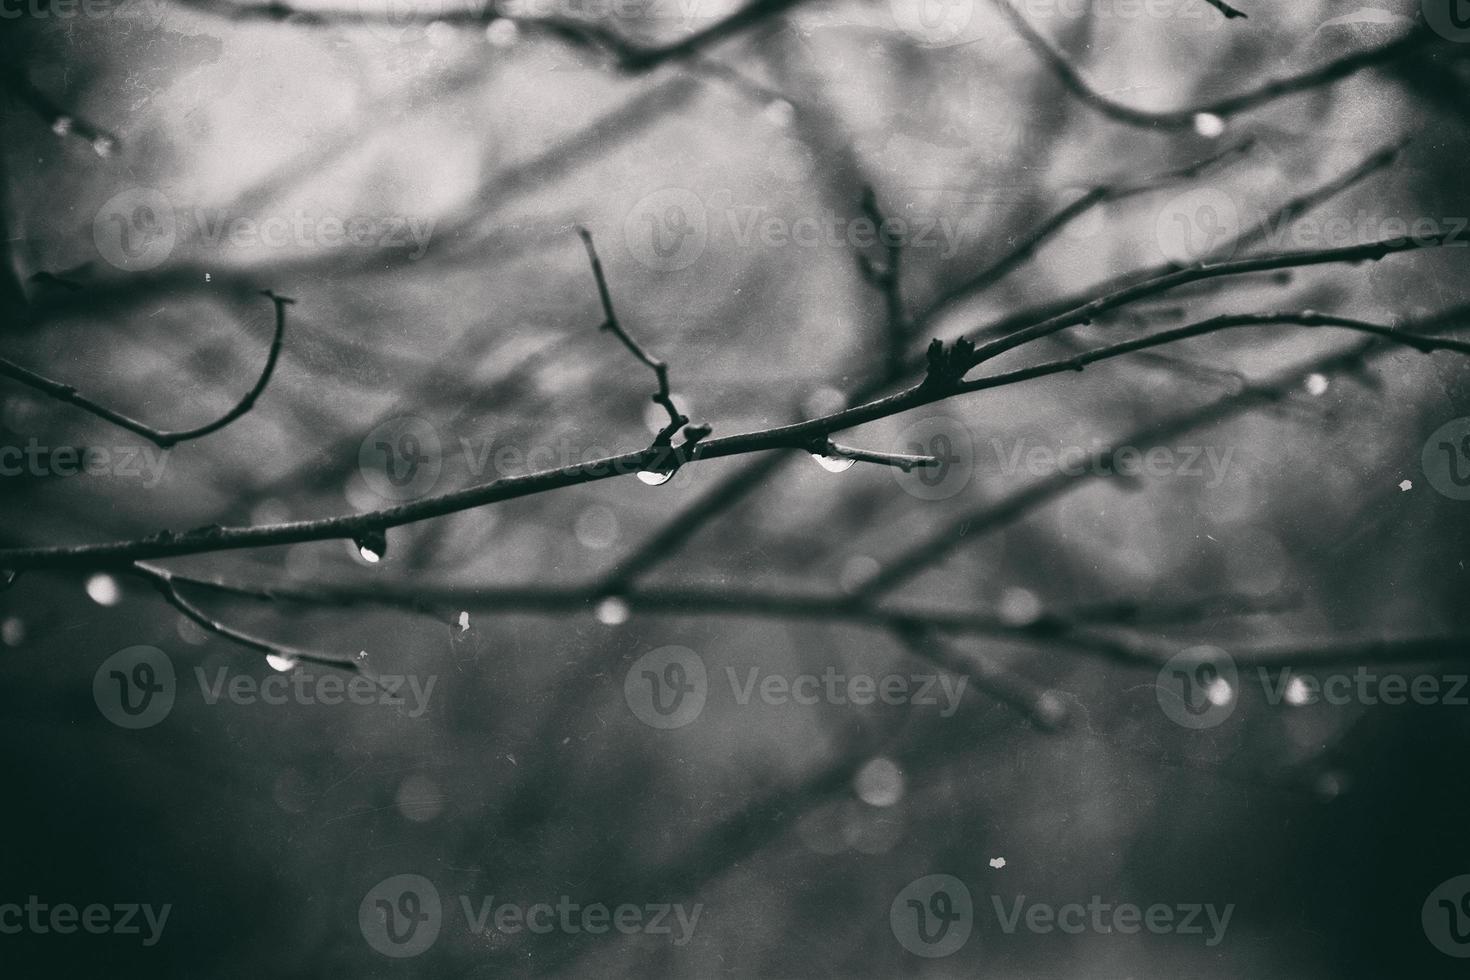 solitário sem folhas árvore galhos com gotas do água depois de uma novembro frio chuva foto